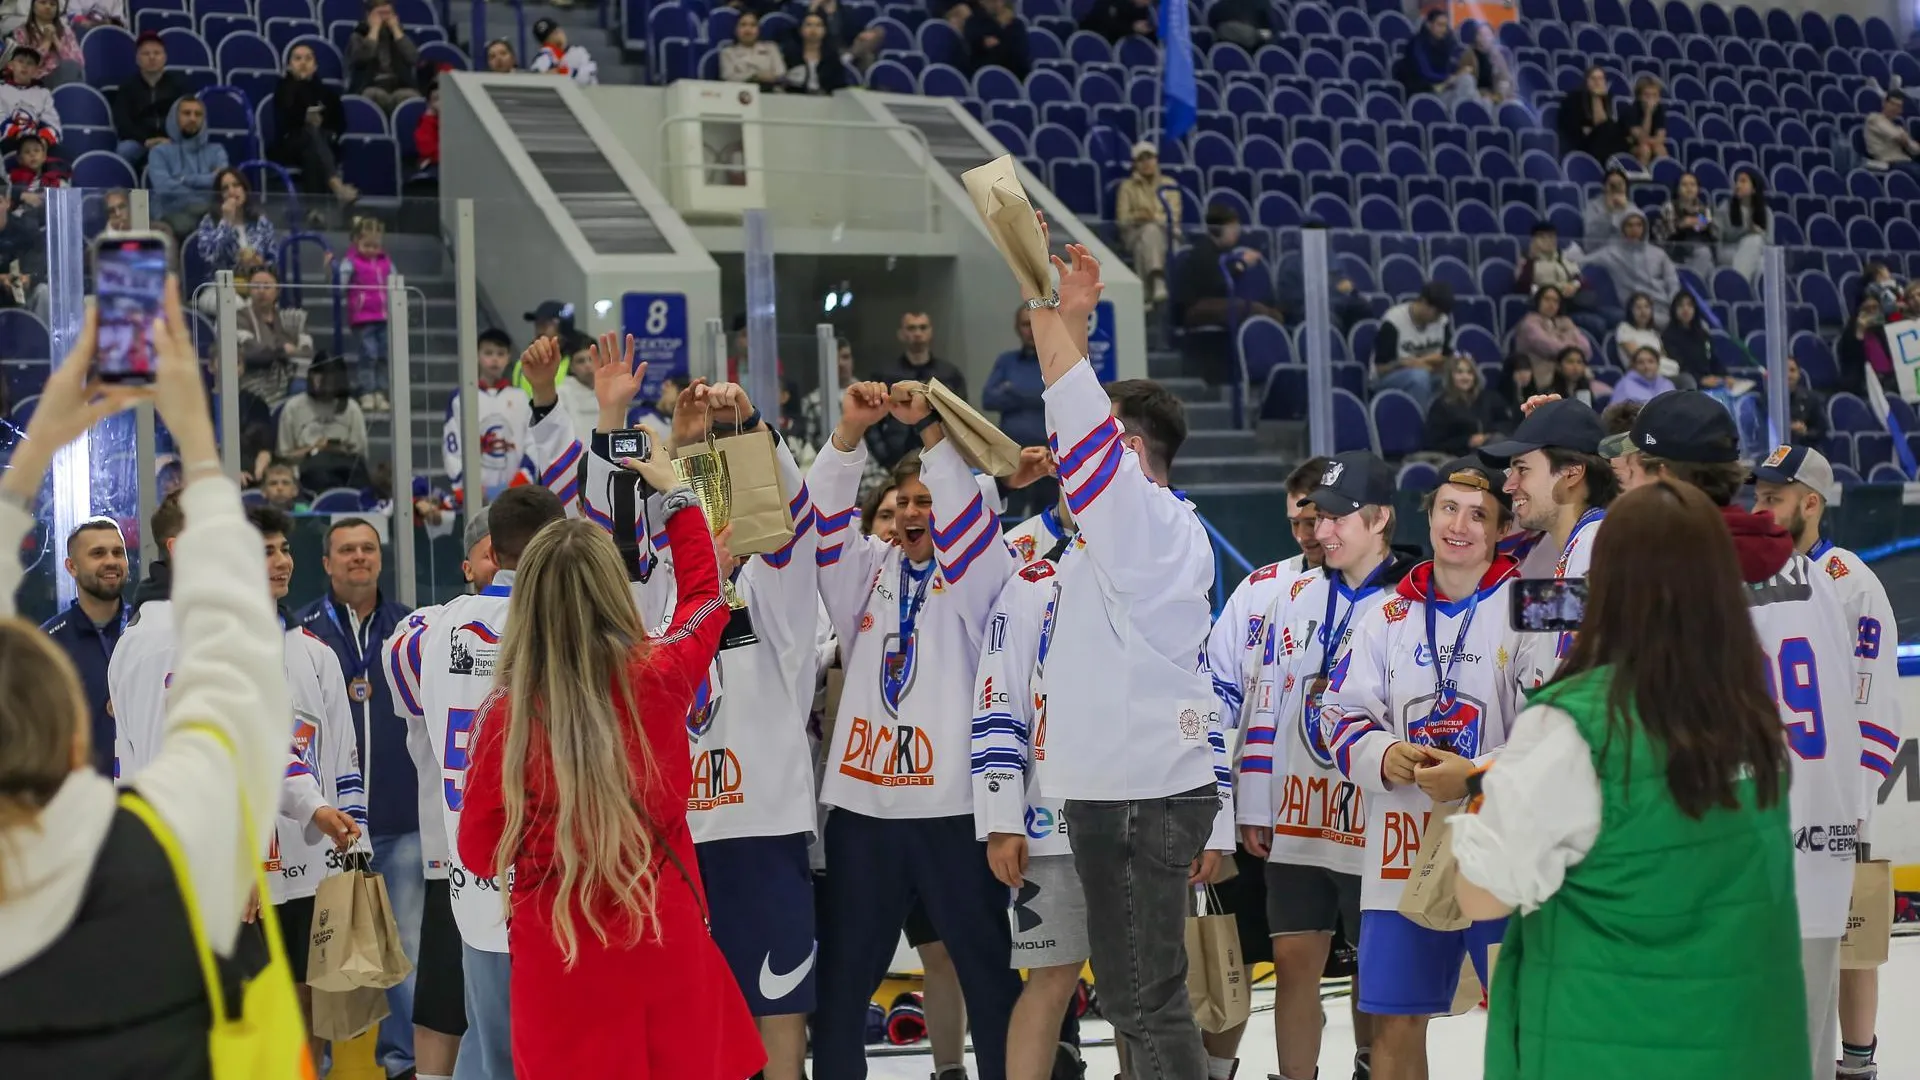 Сборная Подмосковья стала бронзовым призером международного турнира по хоккею